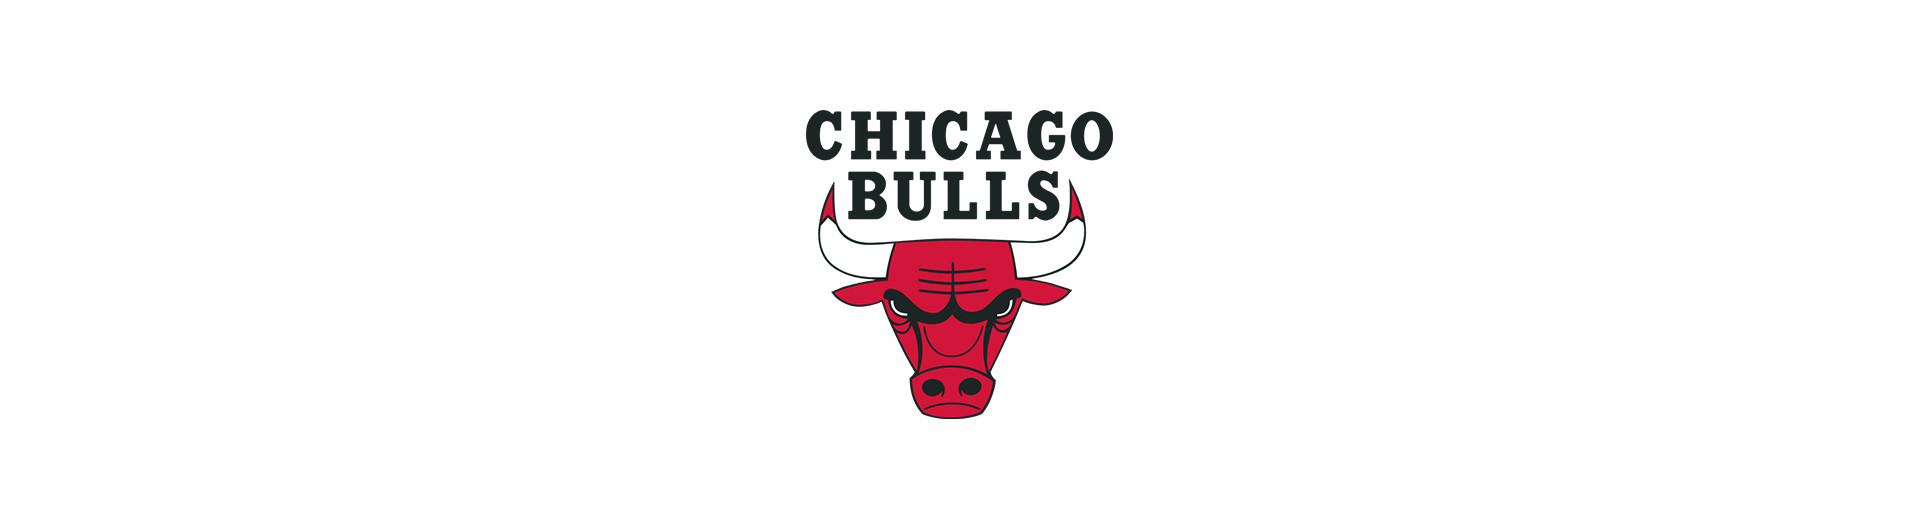 Chicago Bulls (CHI)